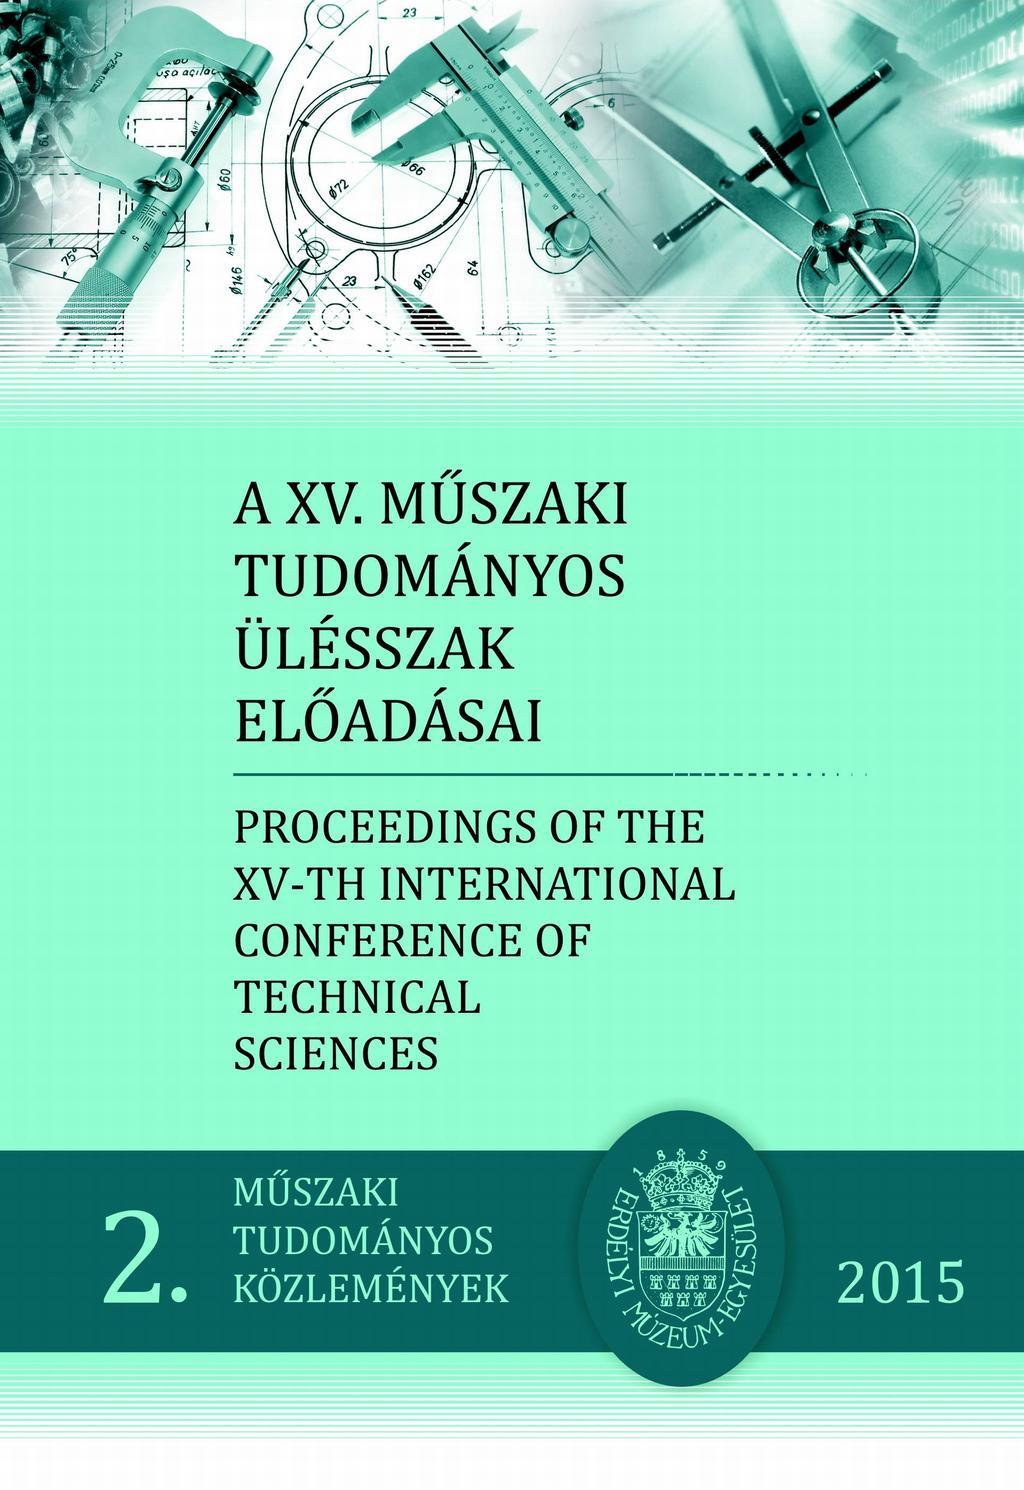 A XV. MŰSZAKI TUDOMÁNYOS ÜLÉSSZAK ELŐADÁSAI PROCEEDINGS OF THE XV -TH  INTERNATIONAL CONFERENCE OF TECHNICAL SCIENCES - PDF Free Download